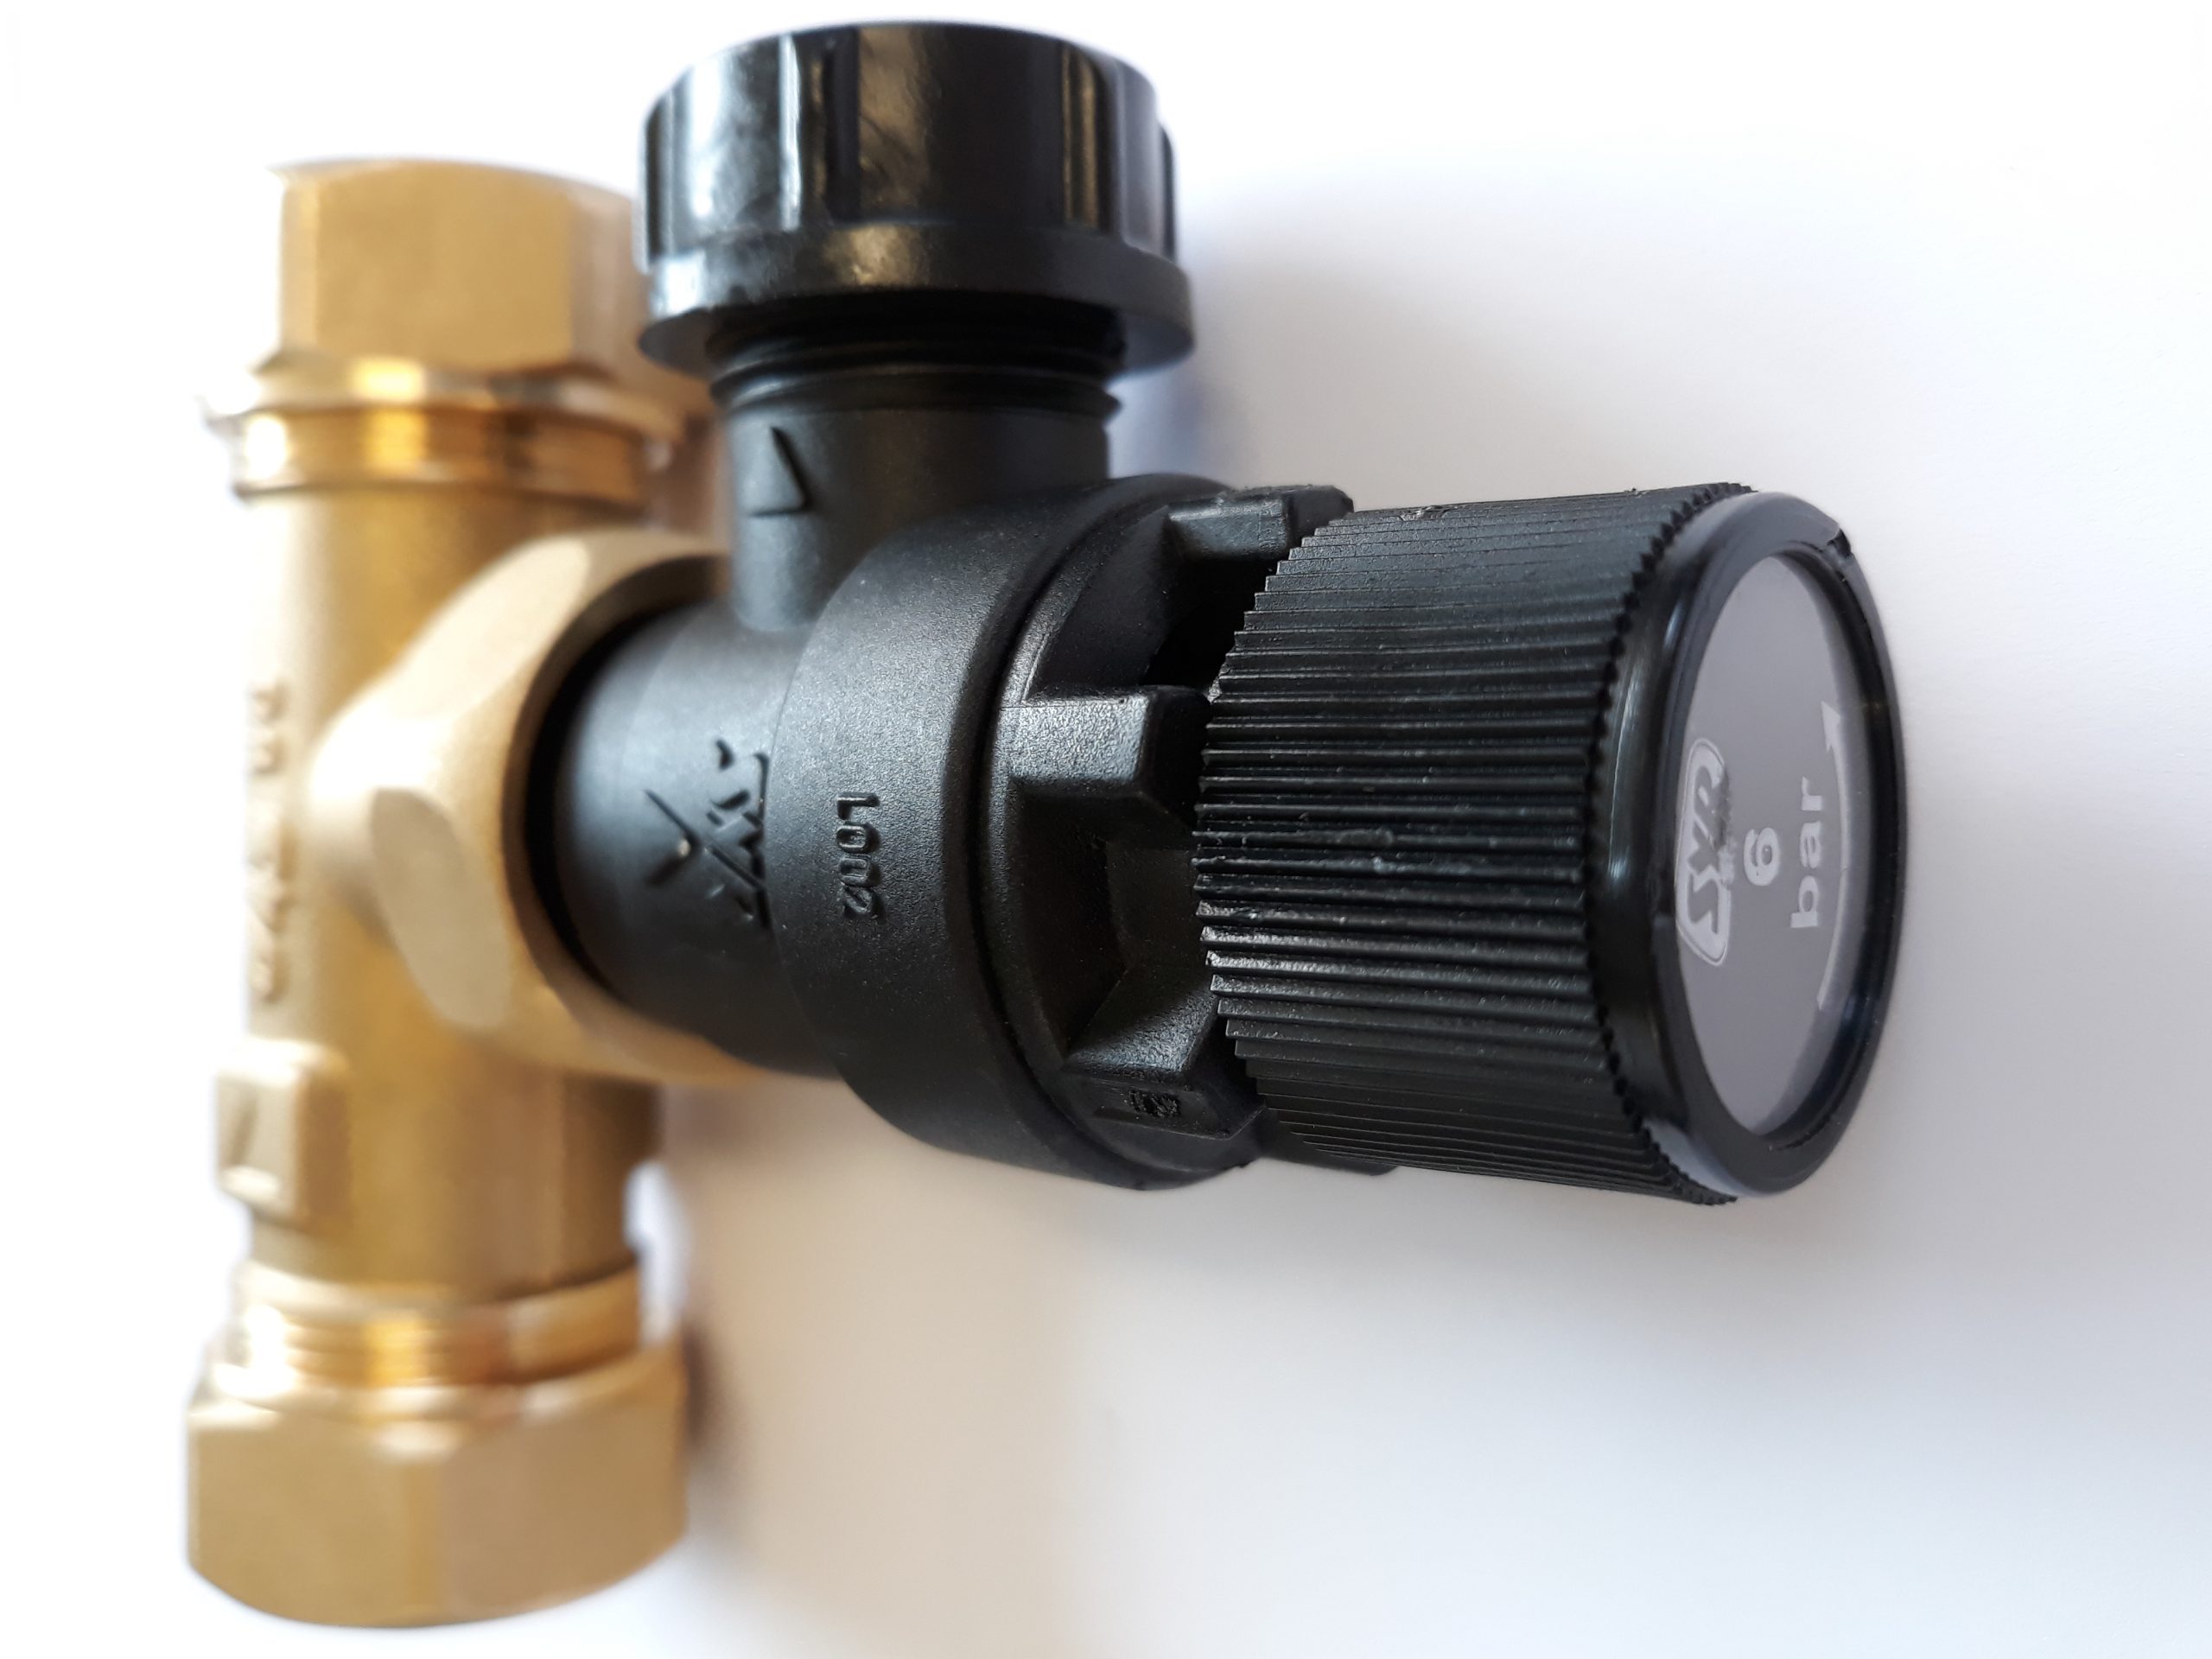 megaflow pressure reducing valve